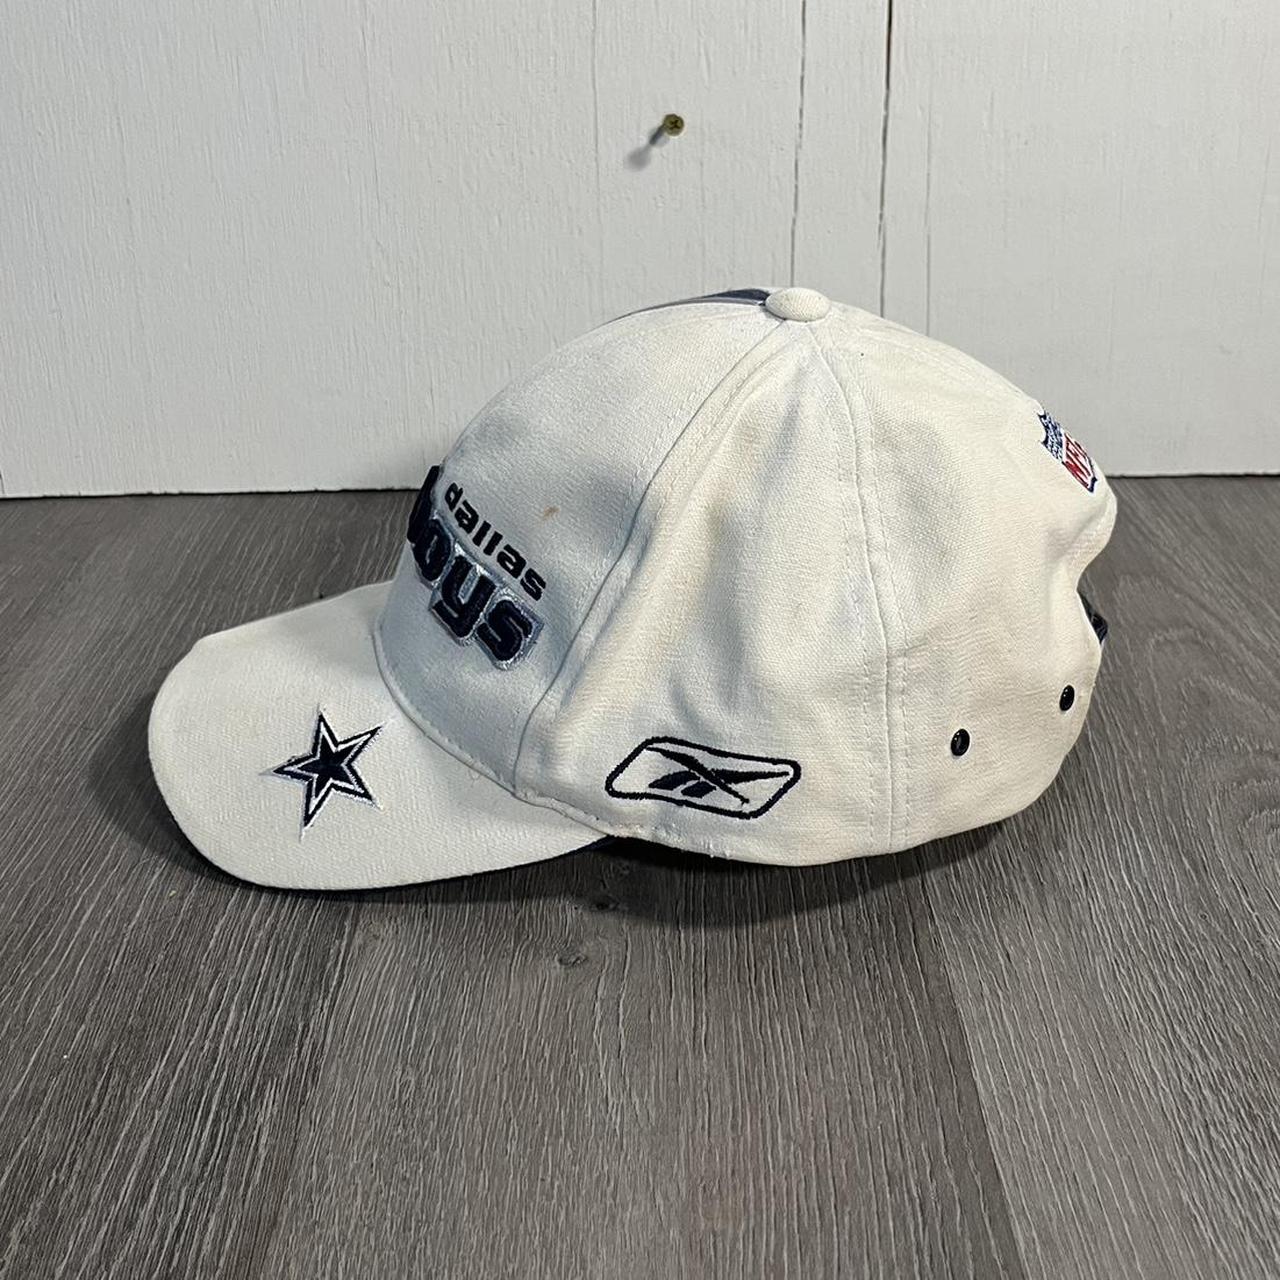 Vintage Reebok/Pro Line Dallas Cowboys Hat - All... - Depop